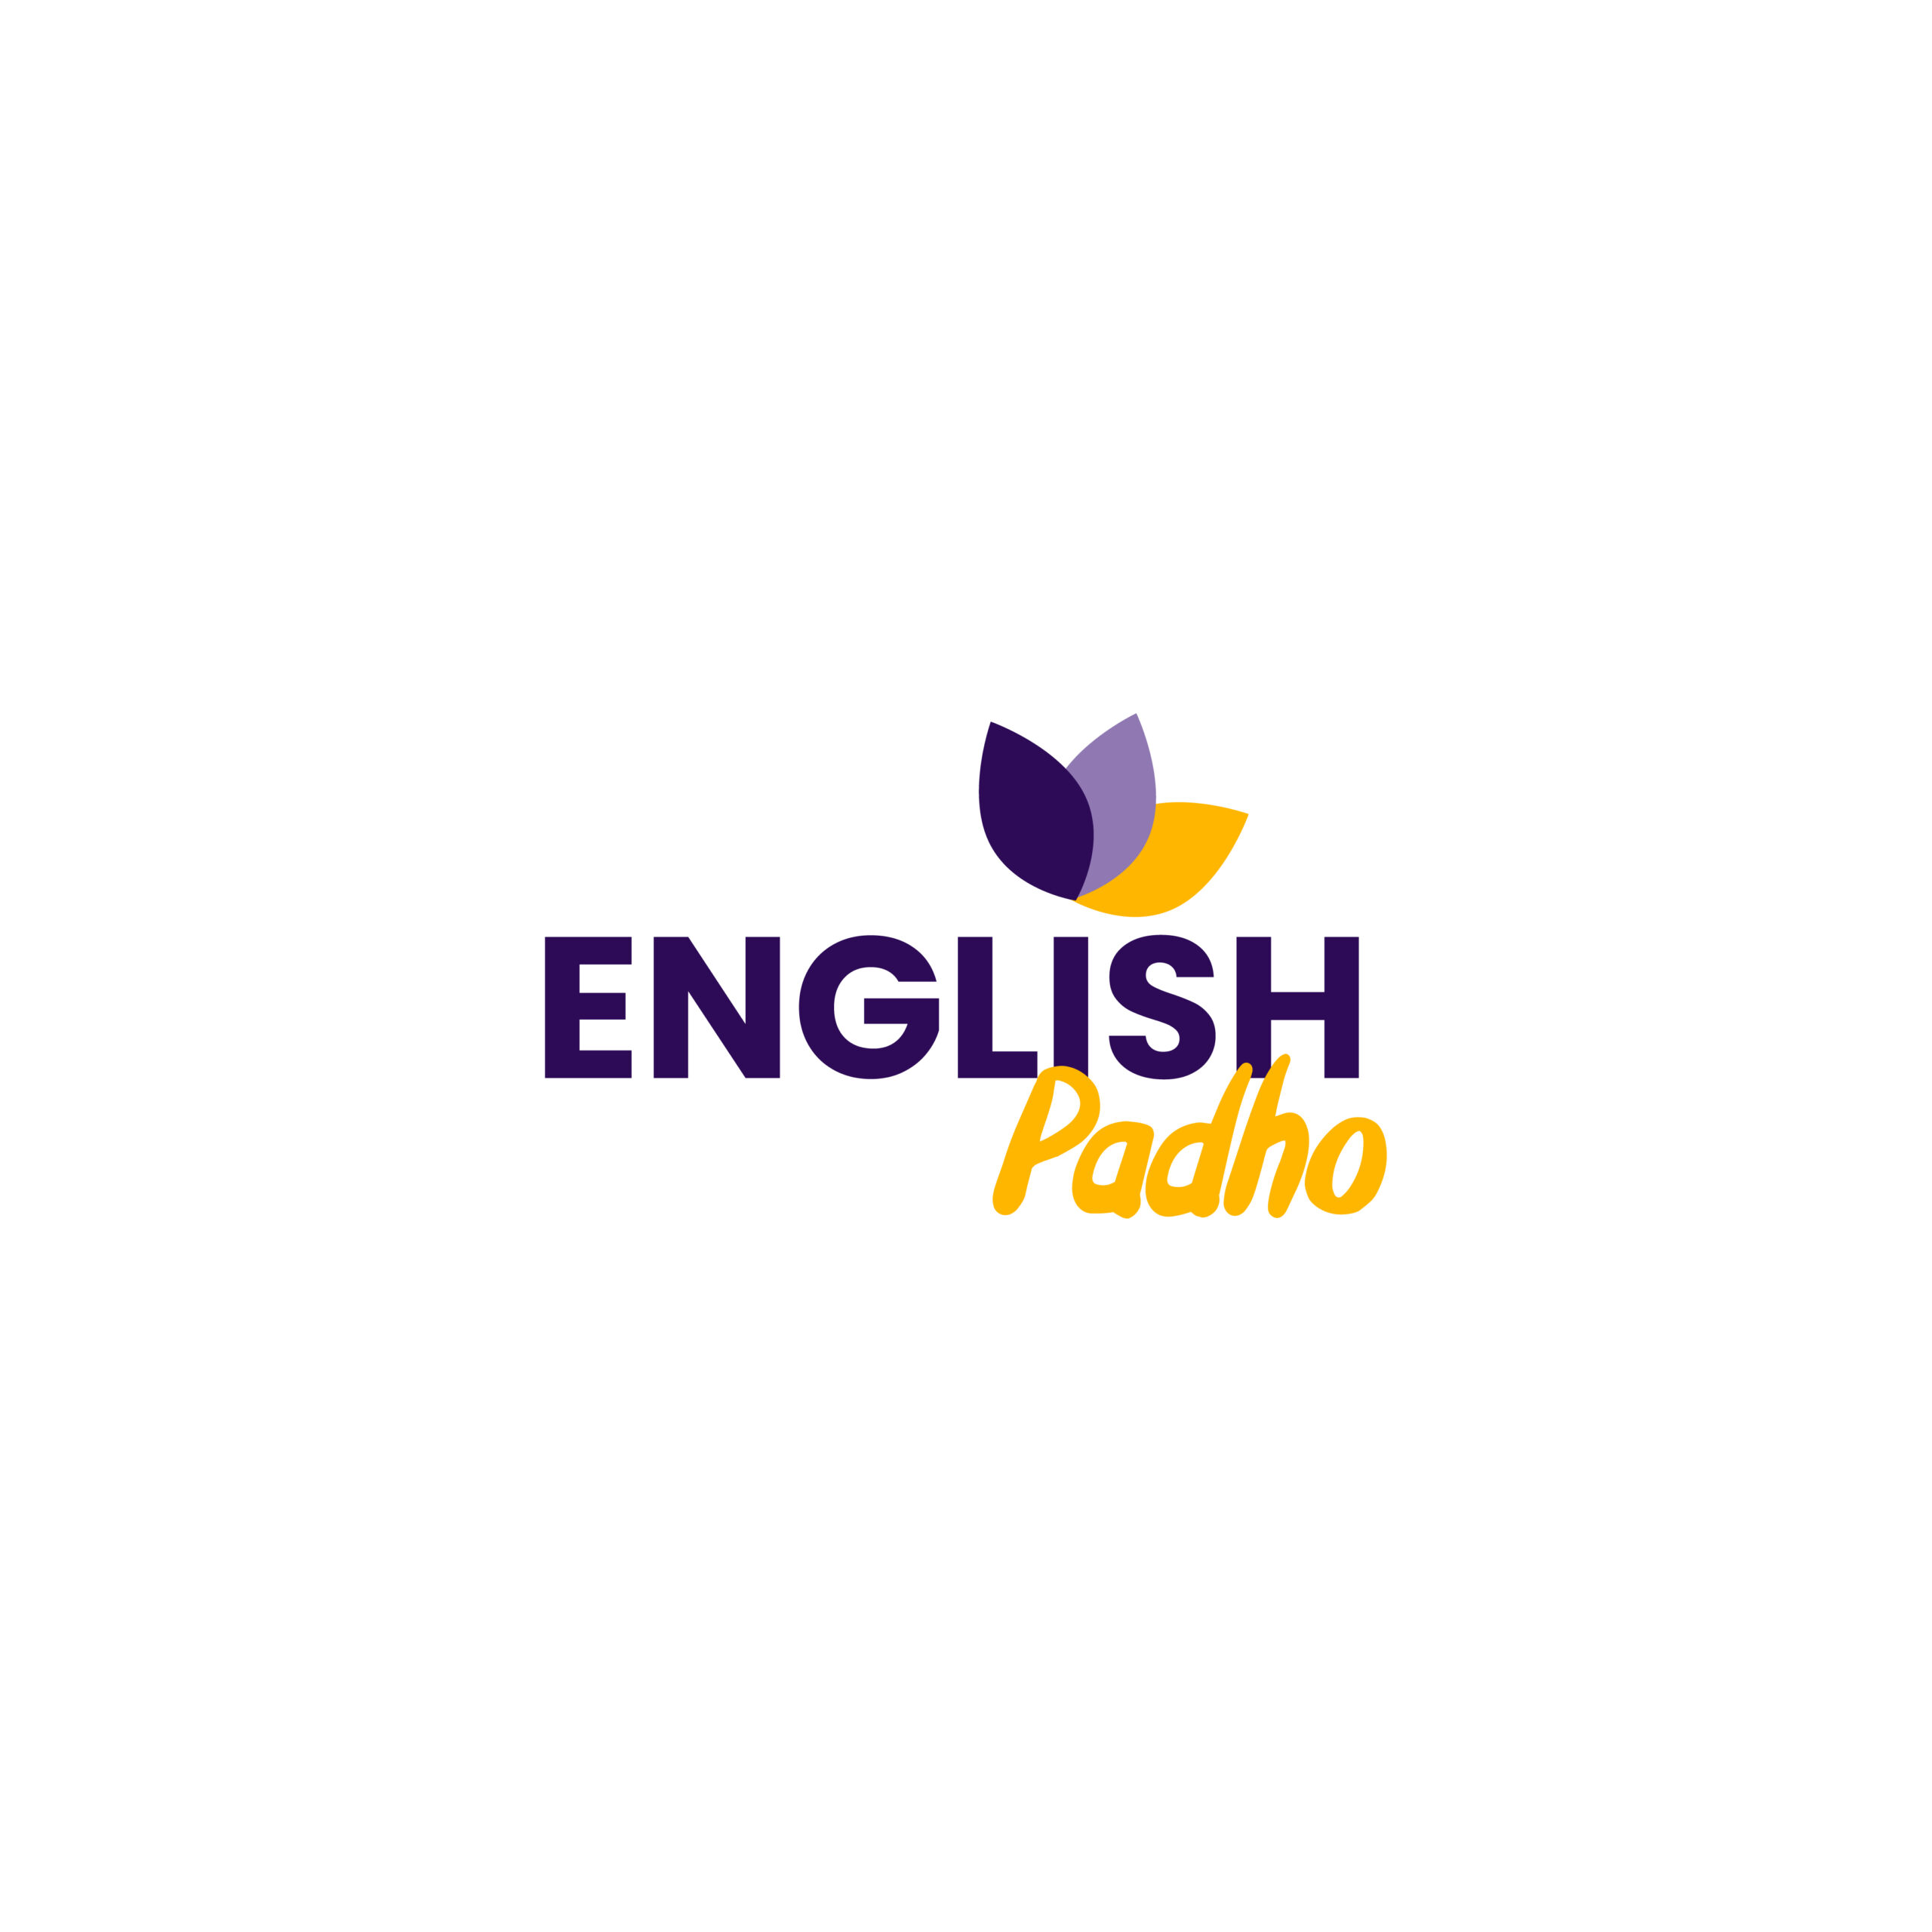 (c) Englishpadho.com